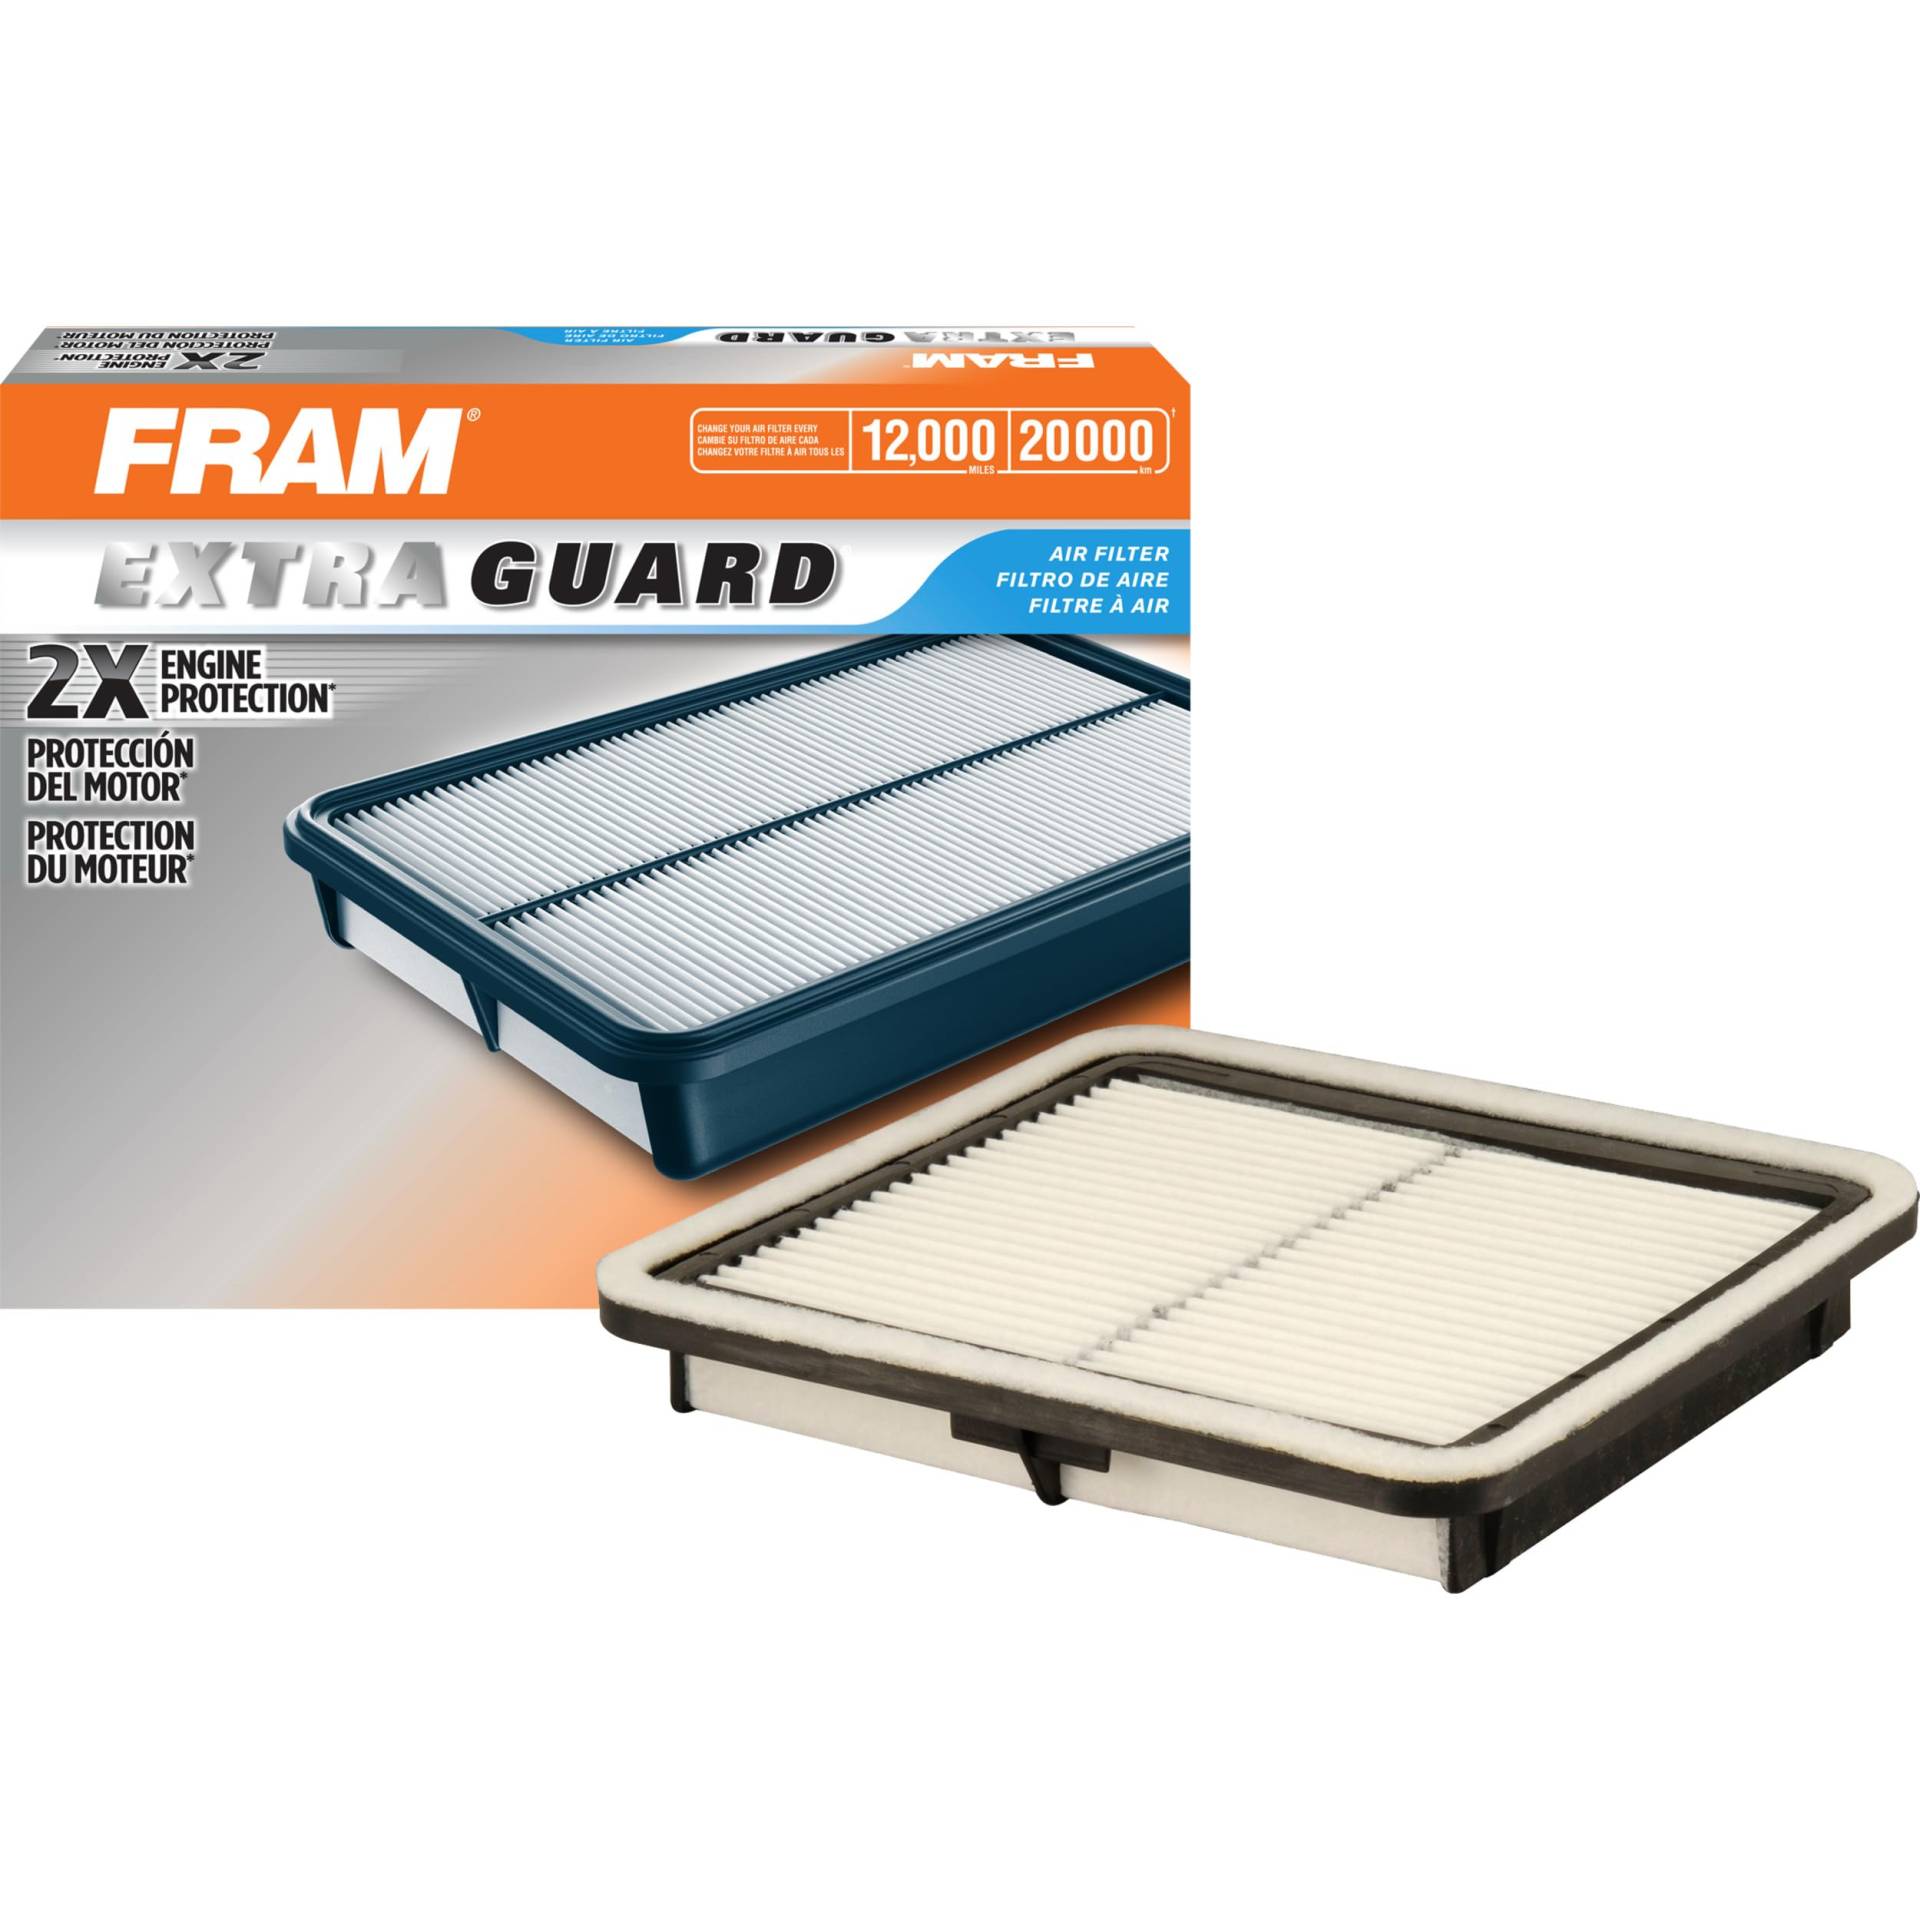 FRAM Extra Guard Motor-Luftfilter-Ersatz, einfache Installation mit fortschrittlichem Motorschutz und optimaler Leistung für ausgewählte Subaru-Fahrzeuge, CA9997 von Fram